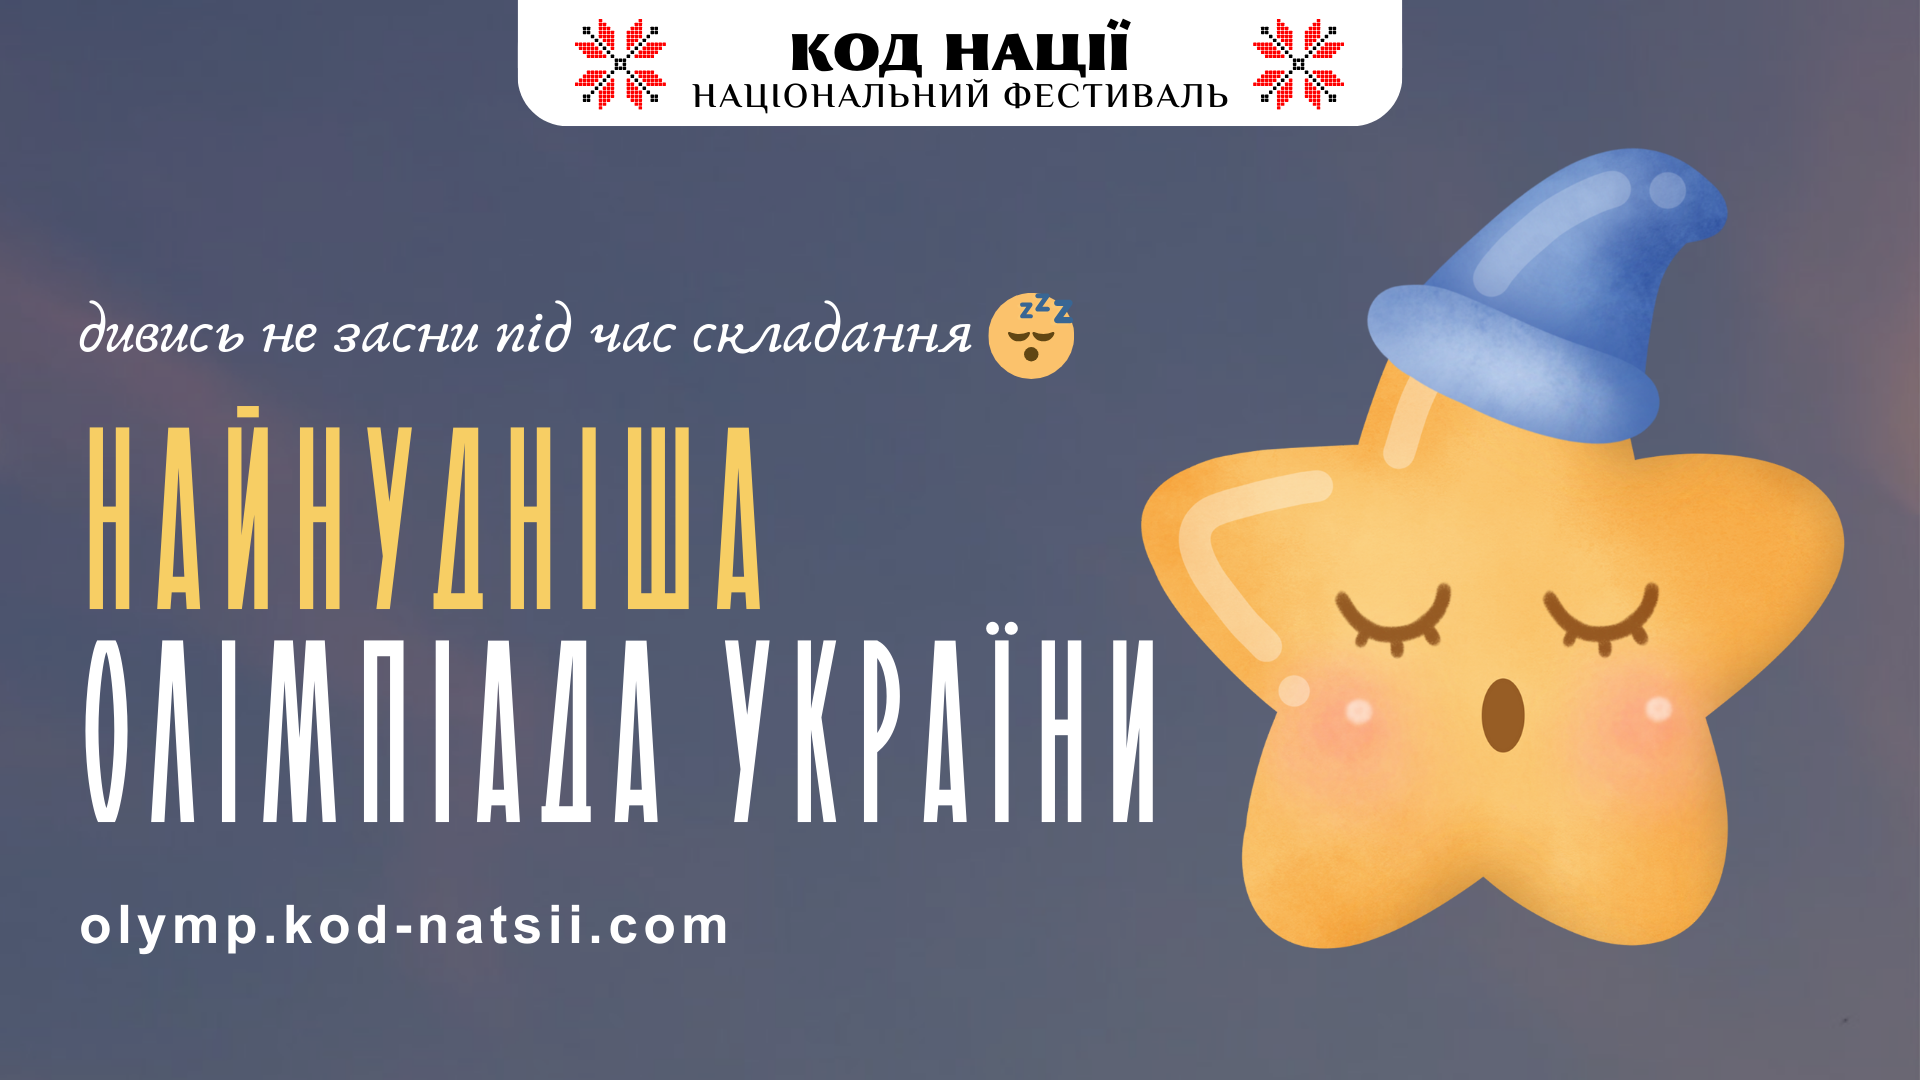 Освітня платформа Національного Фестивалю «Код Нації» оголошує про проведення «Найнуднішої» олімпіади України